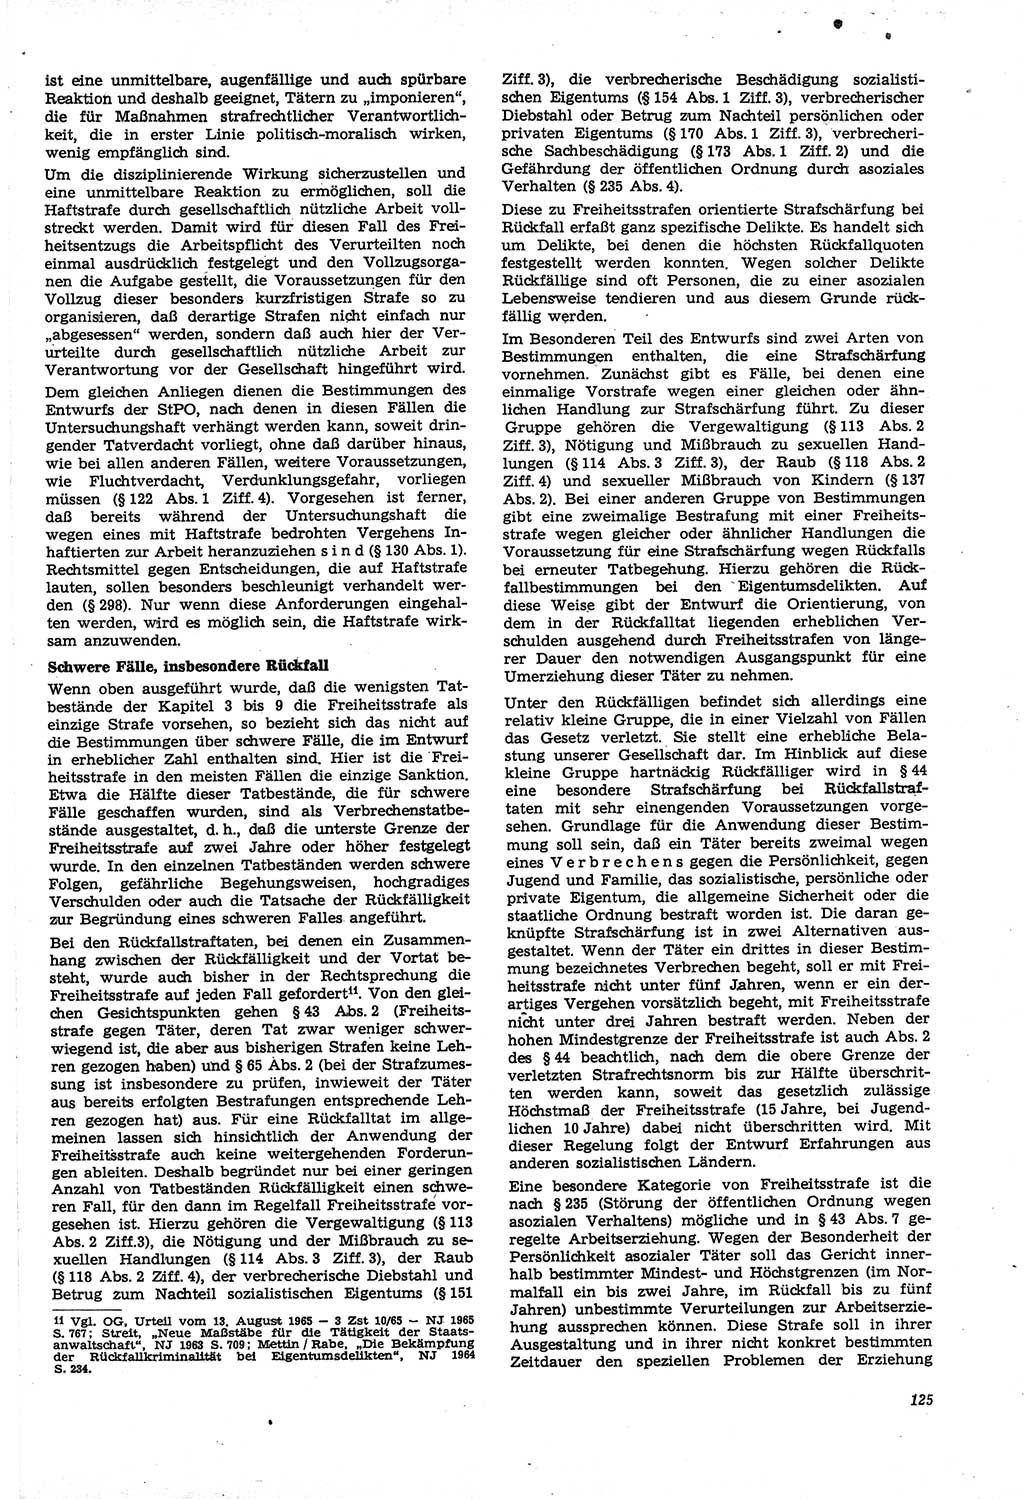 Neue Justiz (NJ), Zeitschrift für Recht und Rechtswissenschaft [Deutsche Demokratische Republik (DDR)], 21. Jahrgang 1967, Seite 125 (NJ DDR 1967, S. 125)